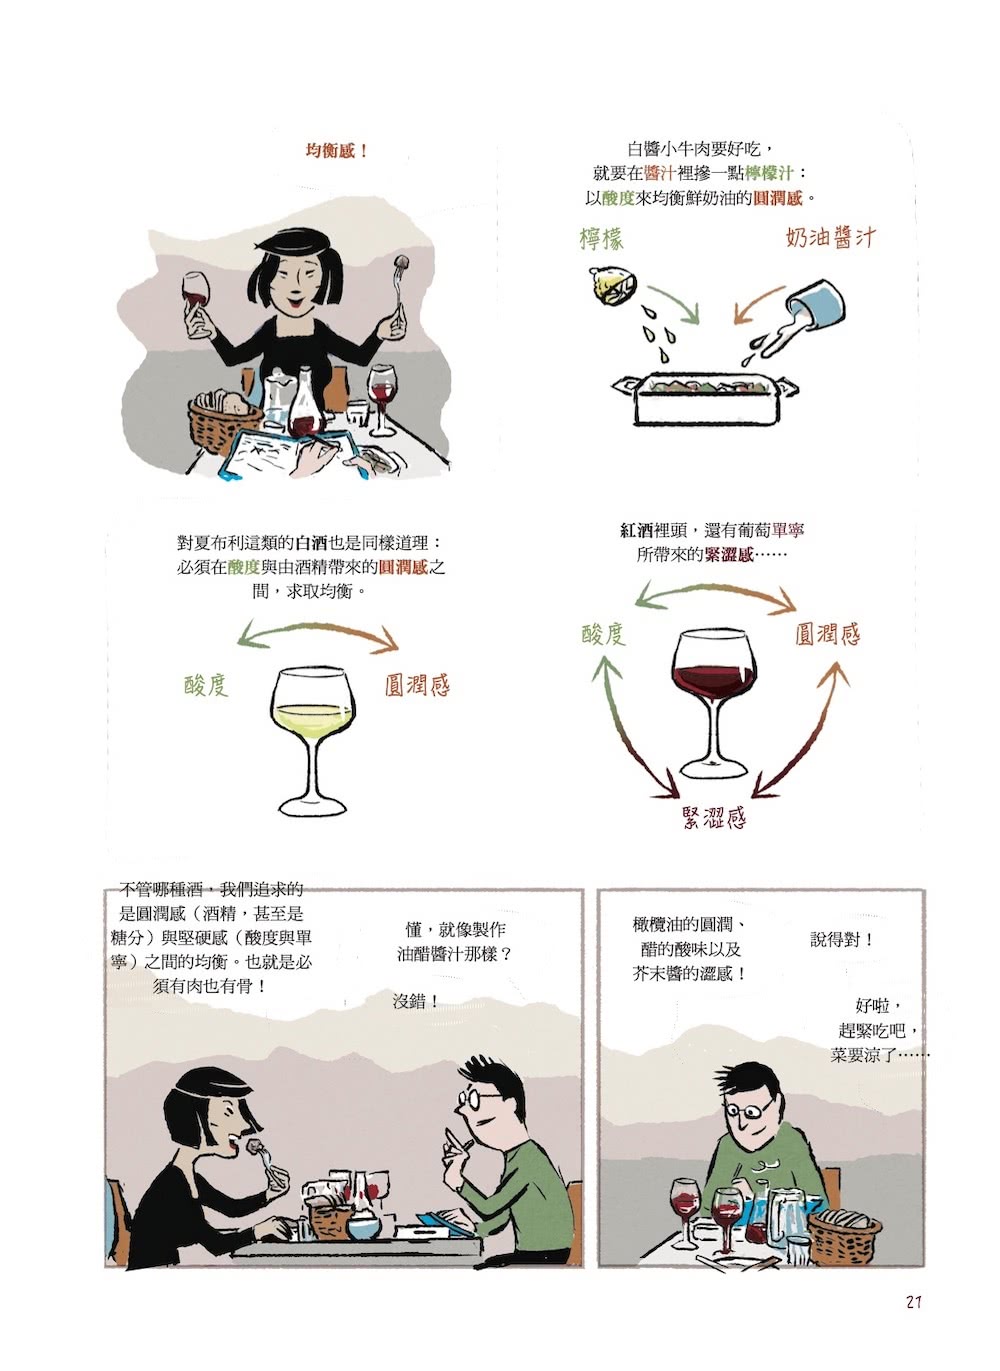 漫畫葡萄酒：從零開始 情境式理解 不須強記 史上最有趣的葡萄酒學習之路